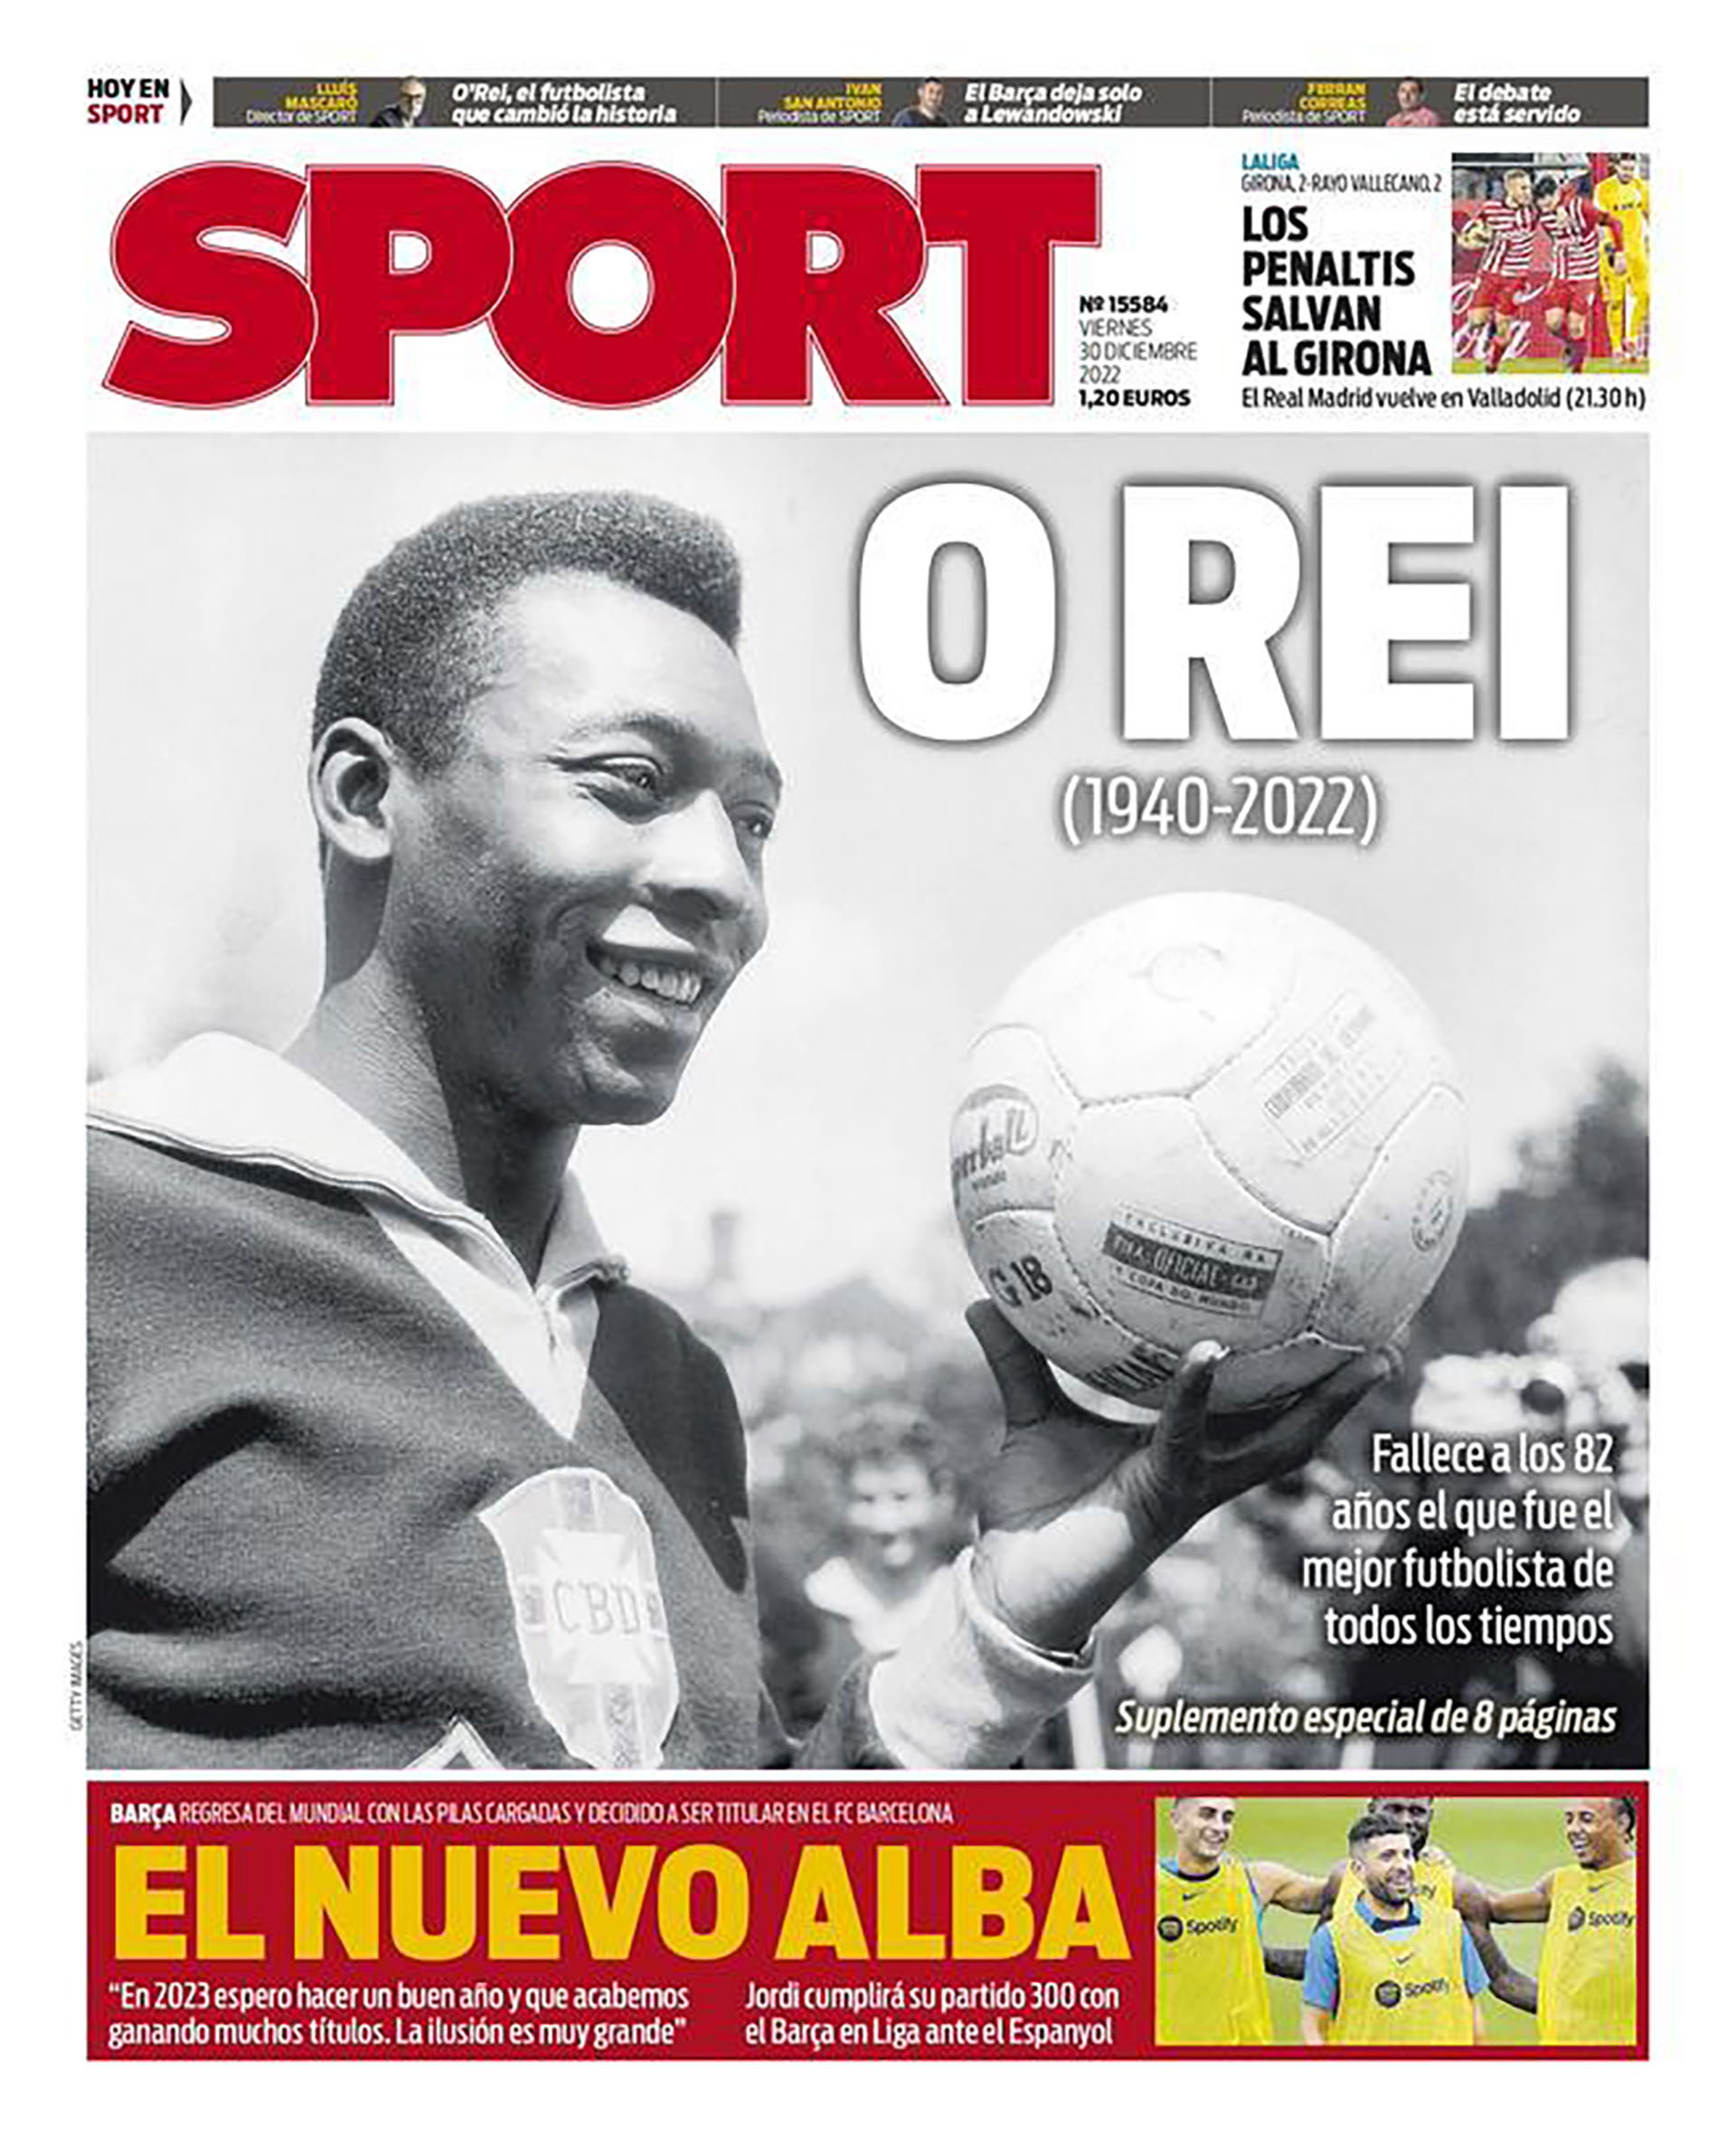 El impacto de la pérdida de Pelé, según Sport